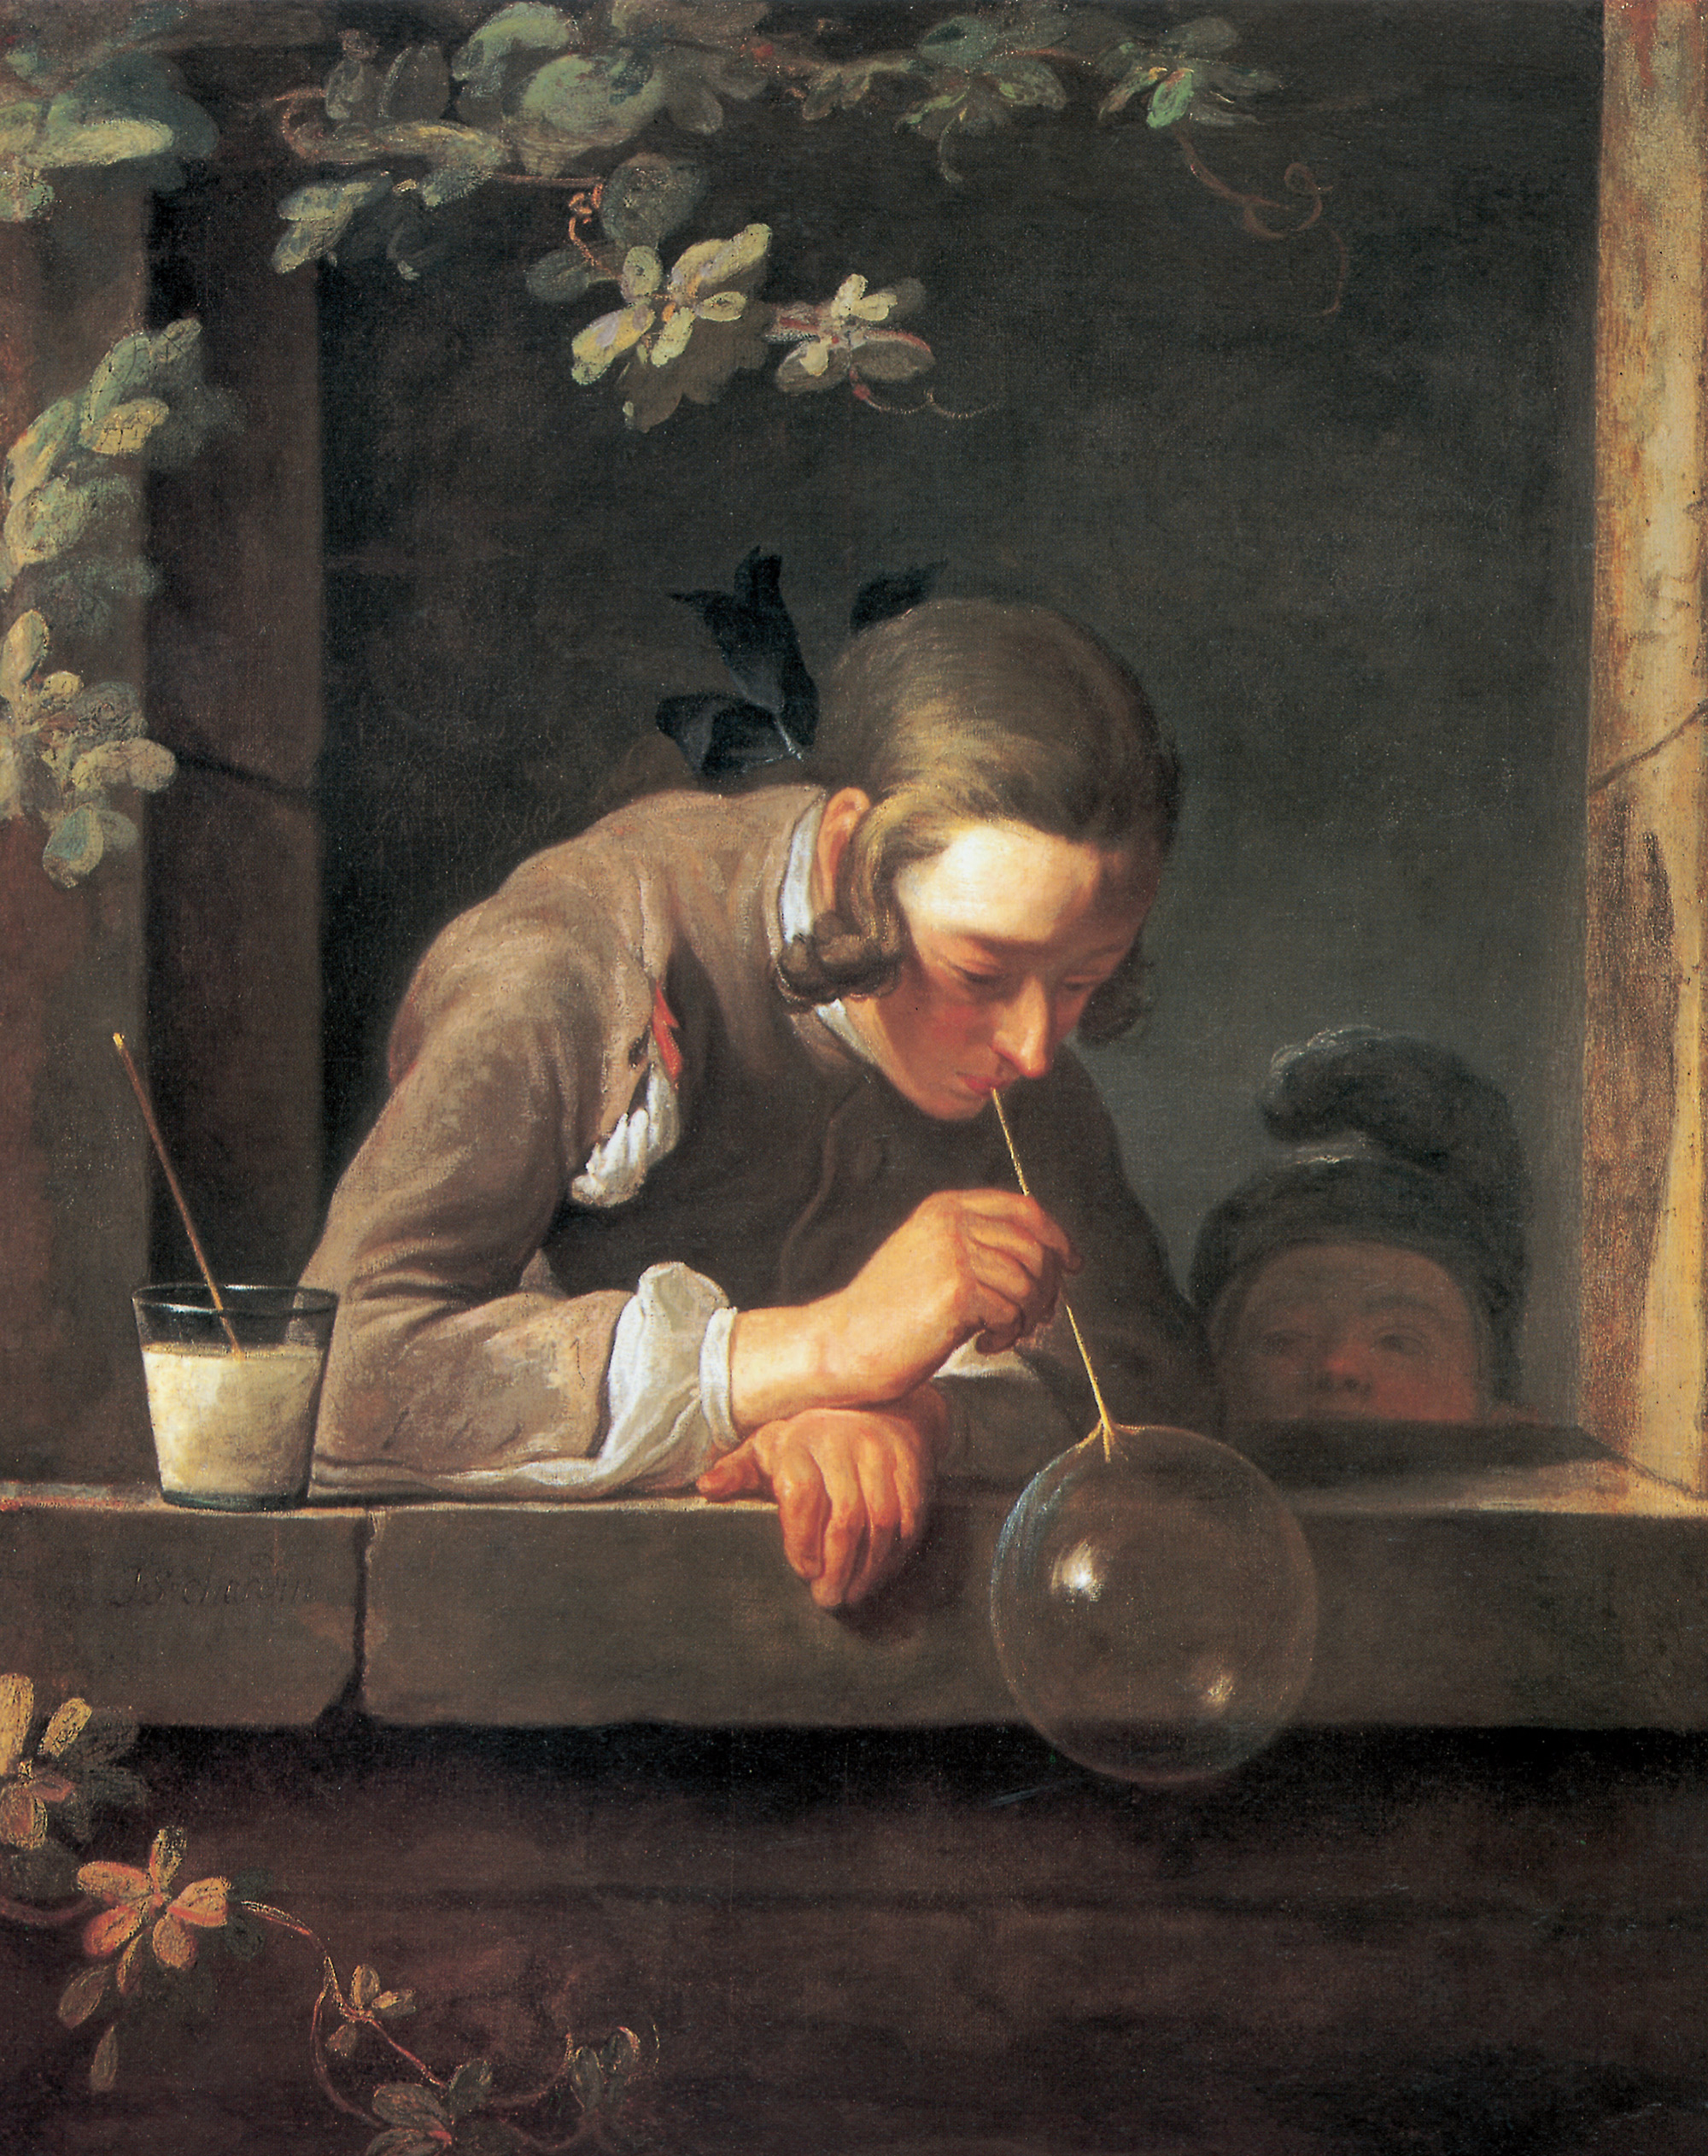 Jean-Baptiste-Siméon Chardin, The Soap Bubble, c. 1739.